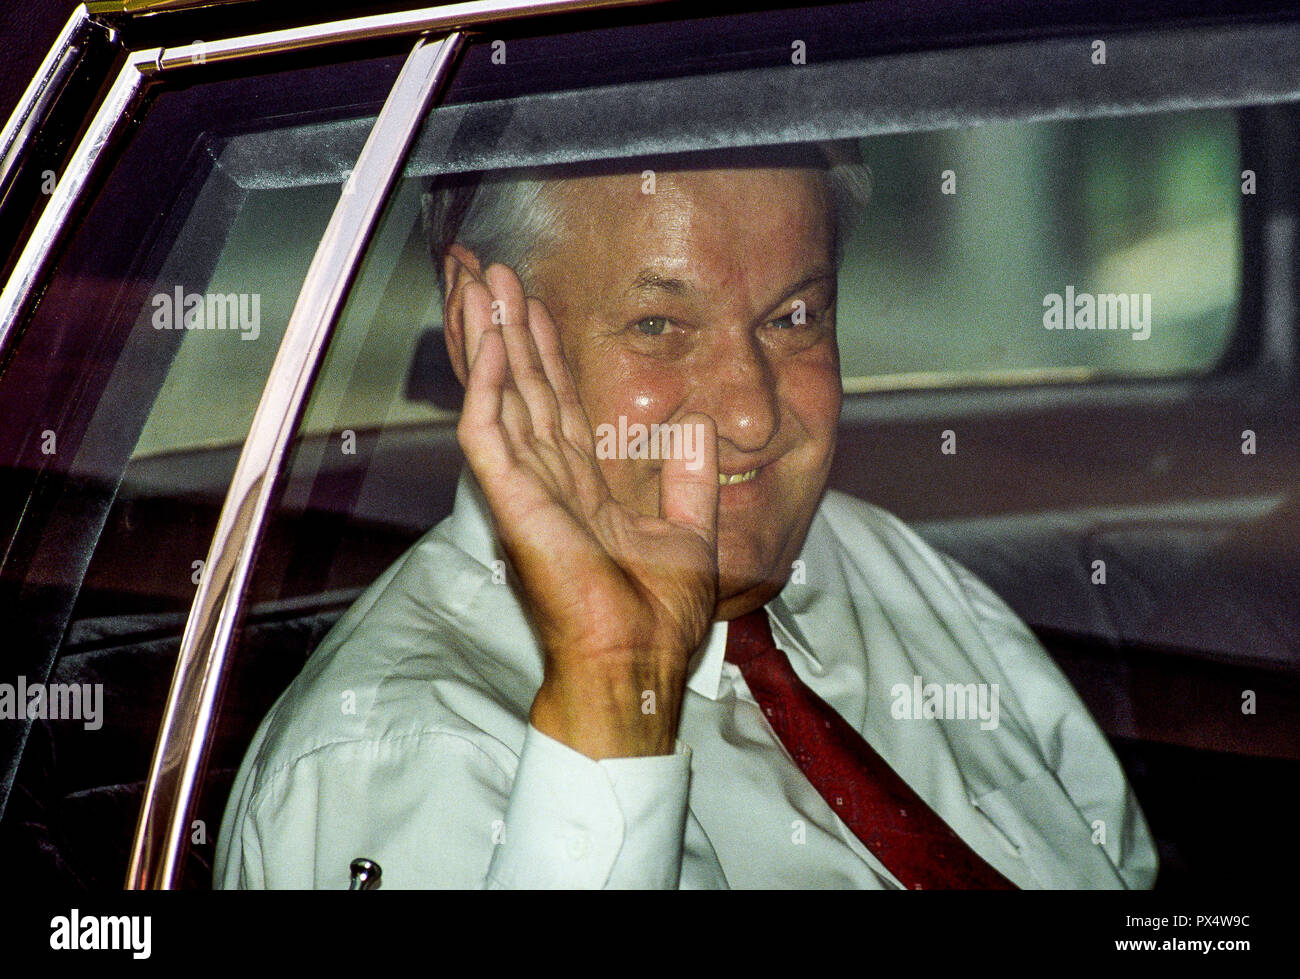 Il Presidente russo Boris Eltsin onde dal sedile posteriore della limousine come egli lascia la casa bianca dopo un incontro con il Presidente George HW Bush a Washington DC., 20 giugno 1991. Foto di Mark Reinstein /MediaPunch Foto Stock